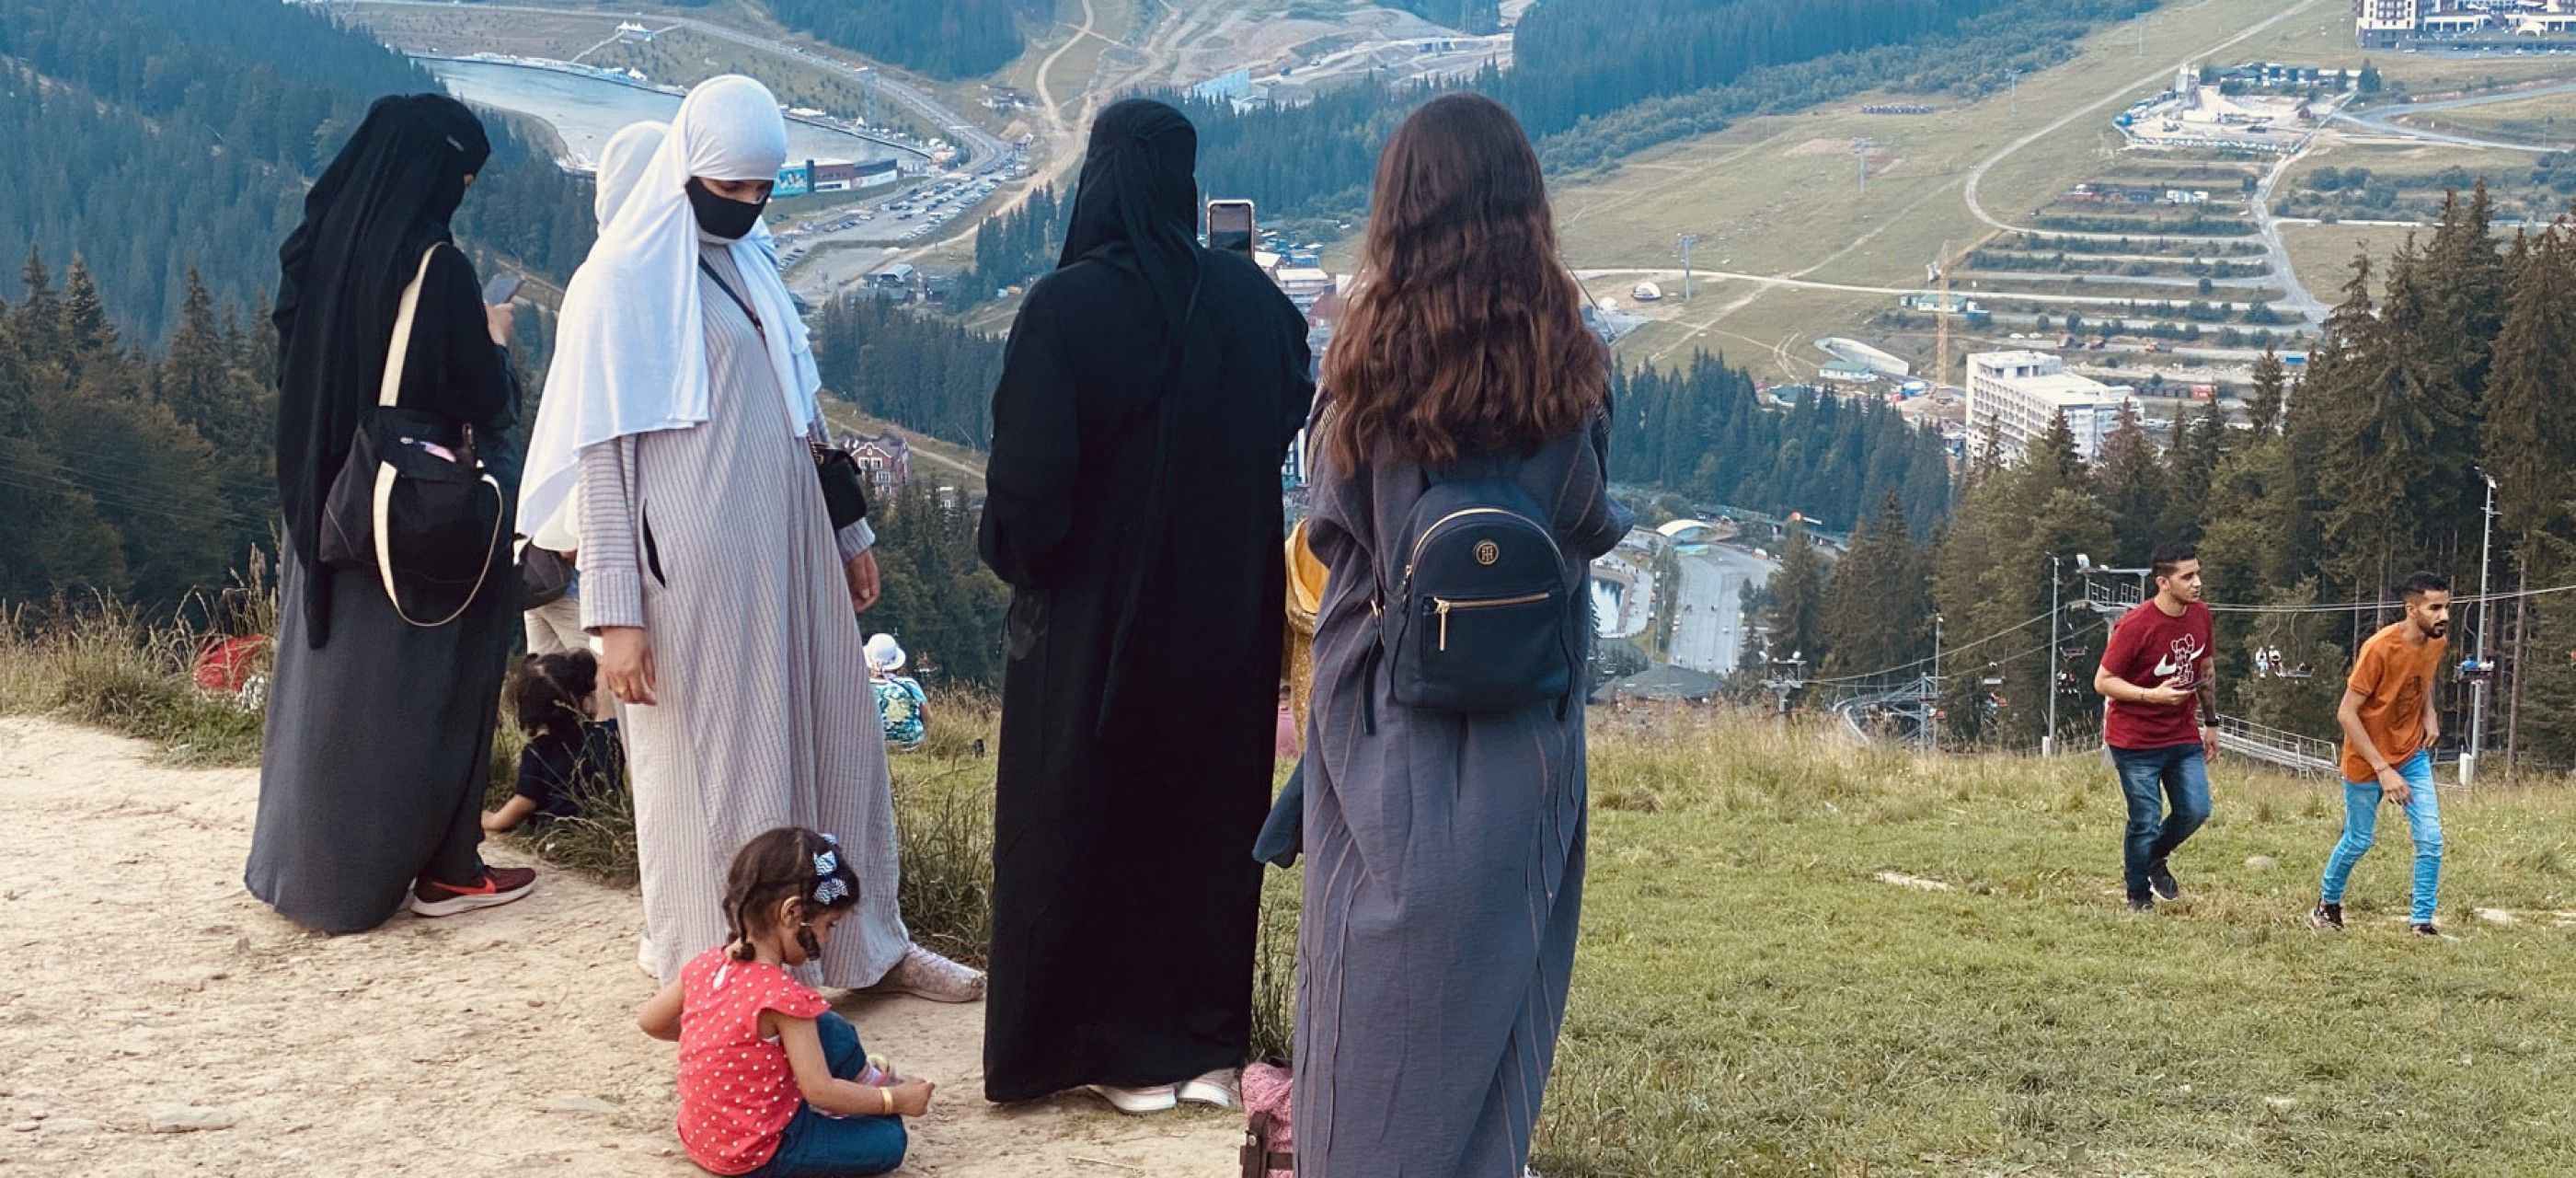 Жінки в хіджабах стали звичною подією у карпатських селах